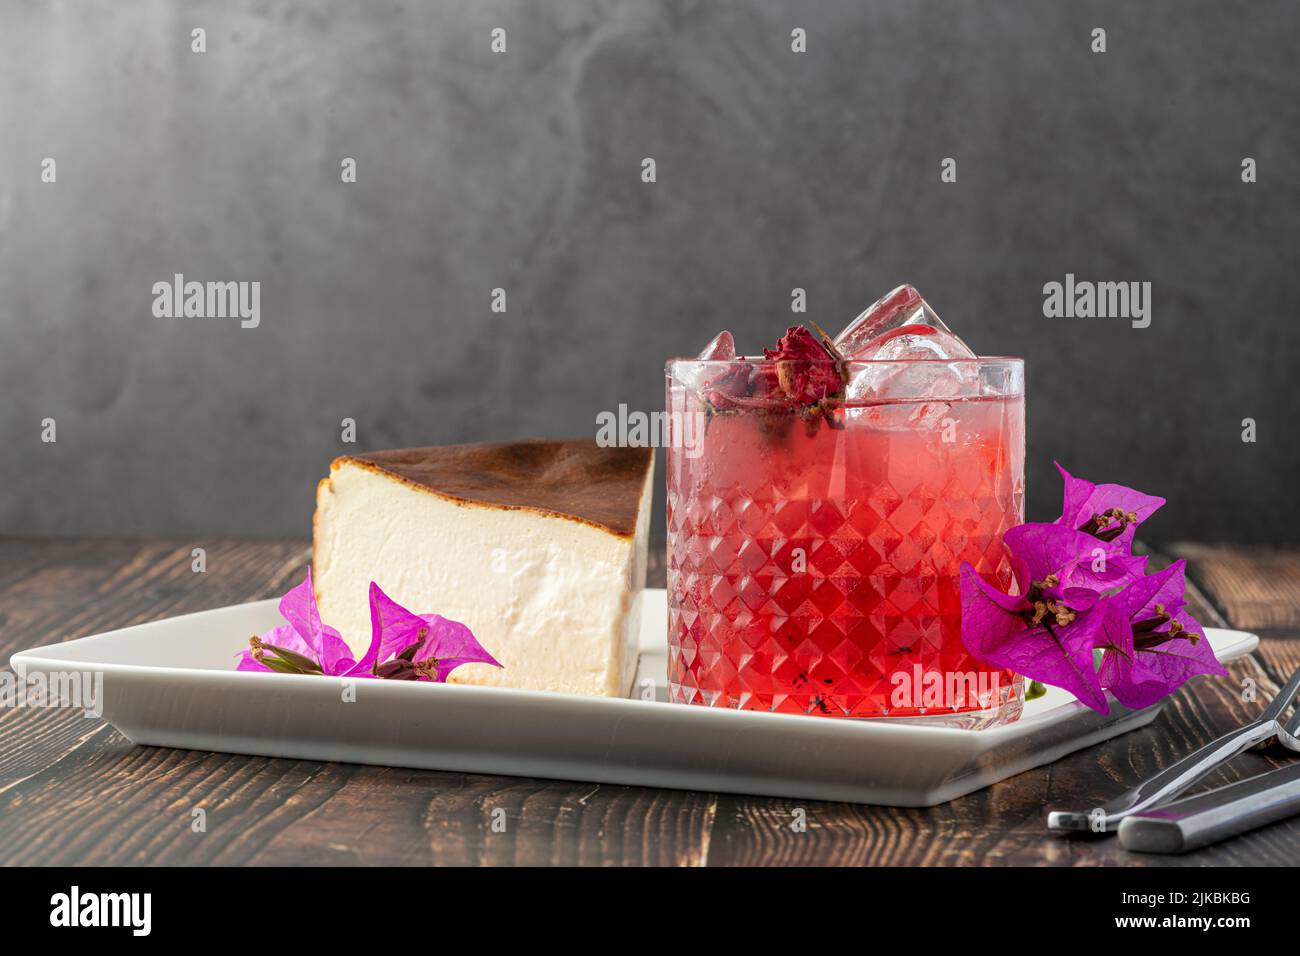 Té de fresa y tarta de queso de san sebastián sobre una mesa de madera Foto de stock